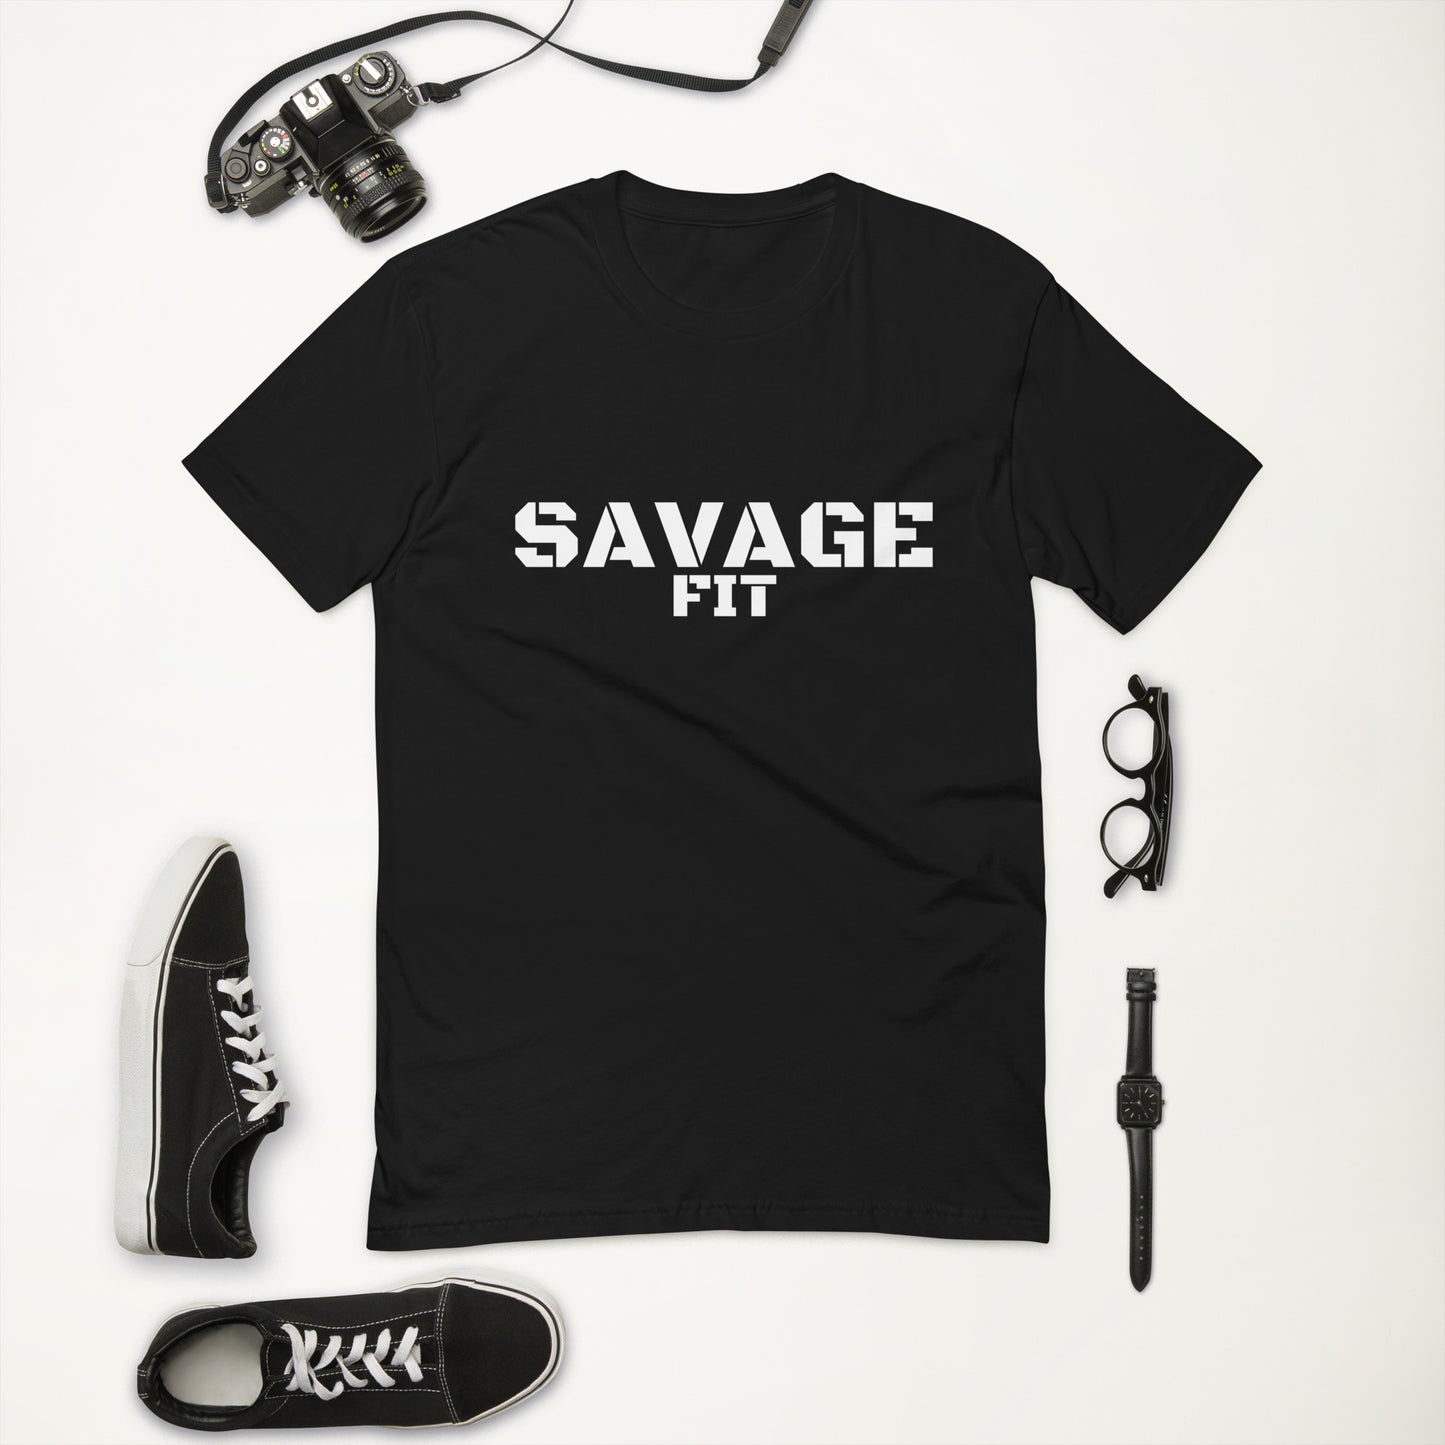 SavageFit Short Sleeve T-shirt